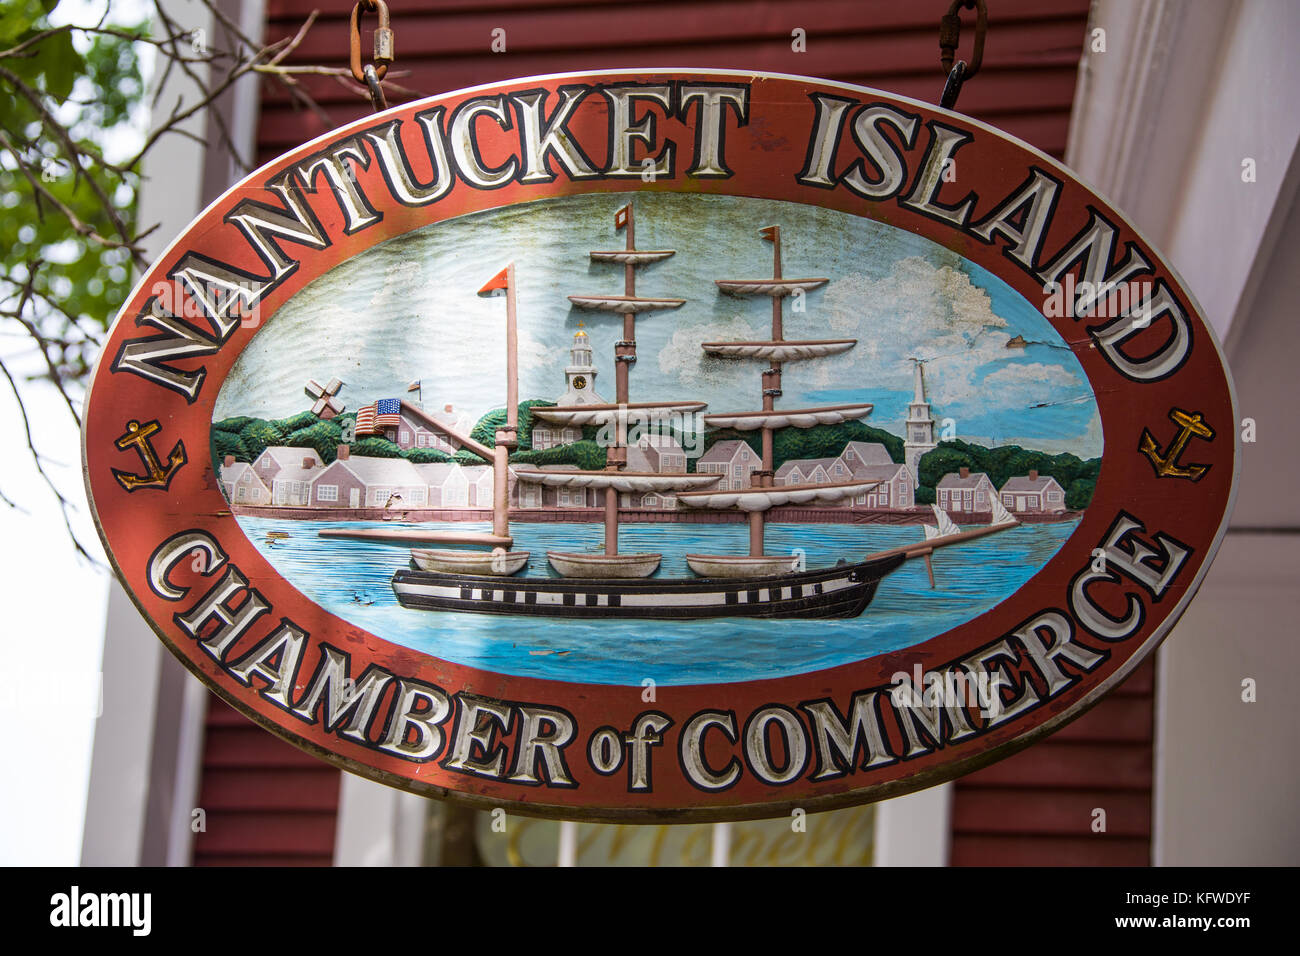 Nantucket Island Chamber of Commerce, Nantucket, Massachusetts, USA Stock Photo